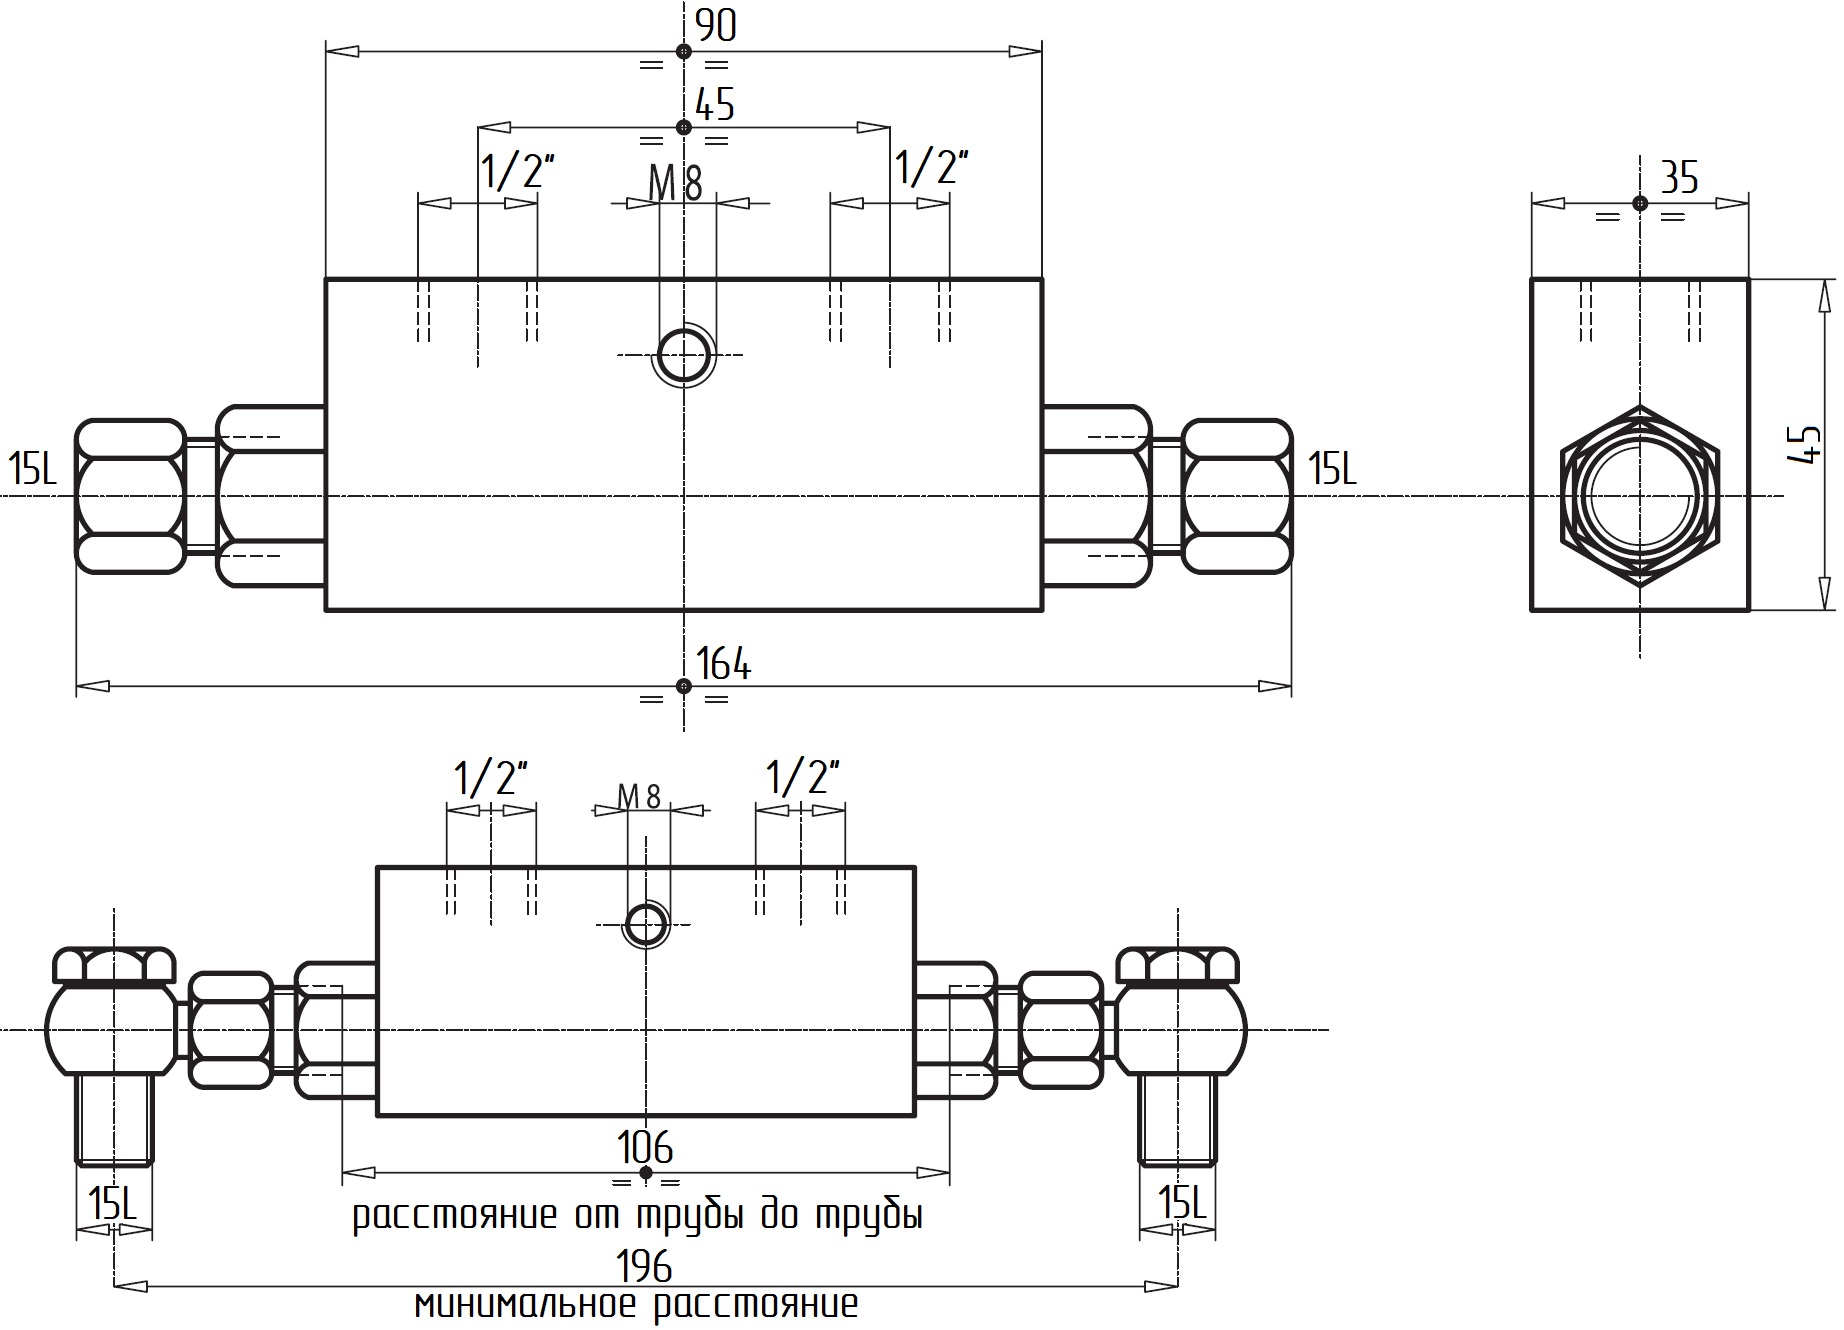 Гидравлическая схема обозначения V0135-VBPDE 1/2 L 2 C.C. - двусторонний гидрозамок